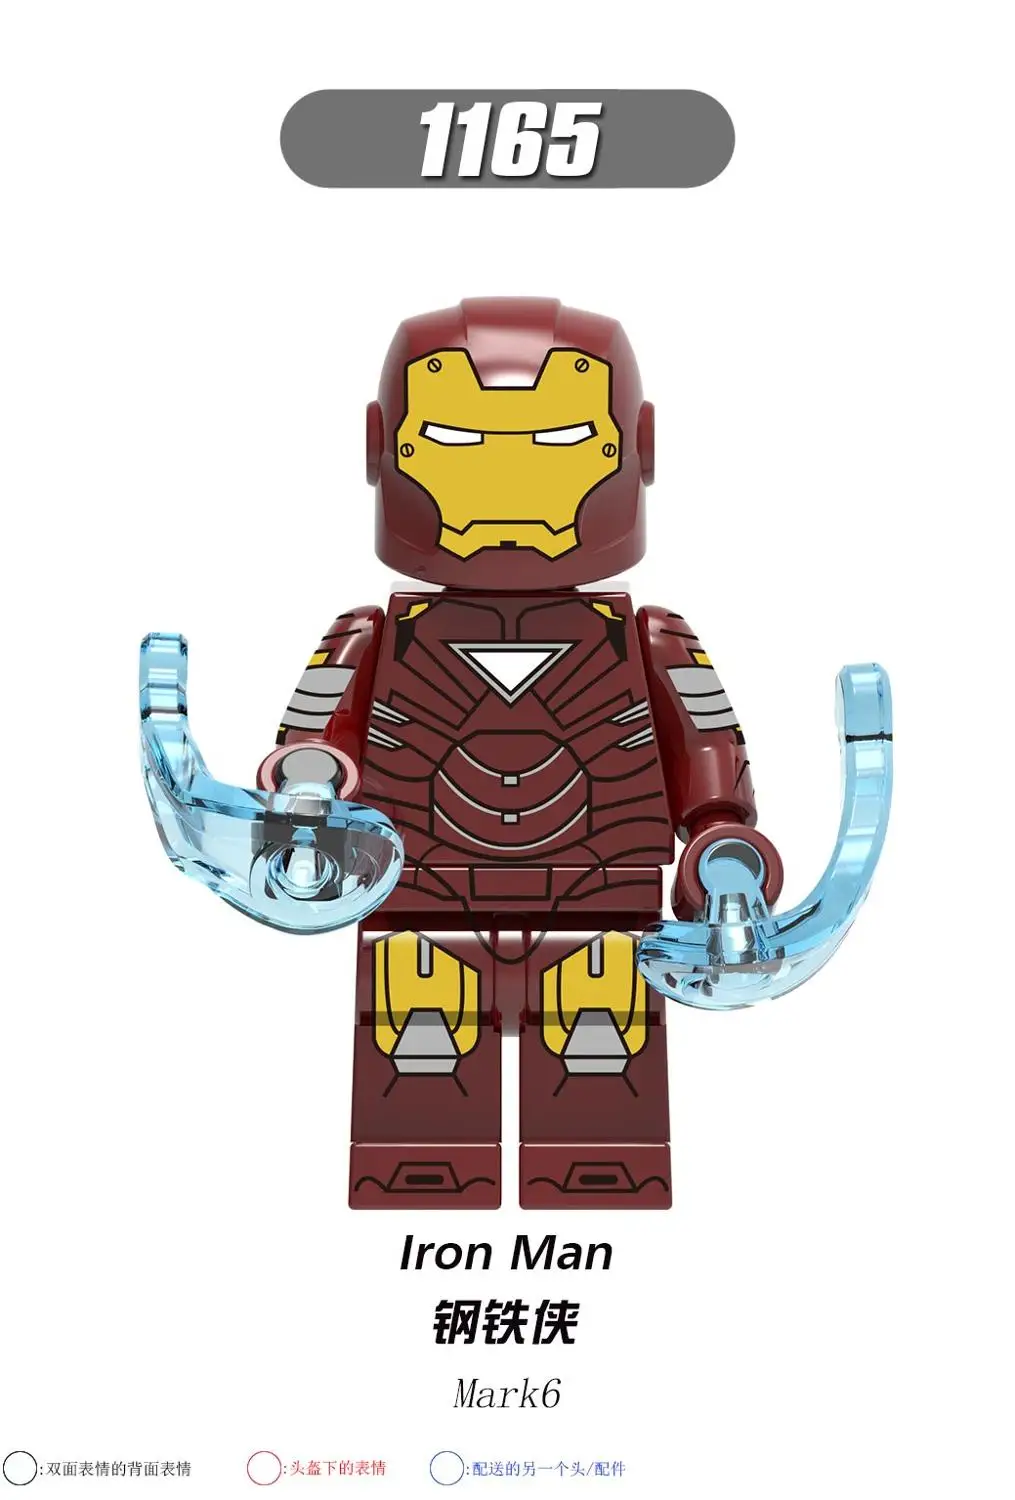 Marvel Мстители Endgame Супер Герои ЖЕЛЕЗНЫЙ ЧЕЛОВЕК MK37 строительные блоки игрушки XH0246